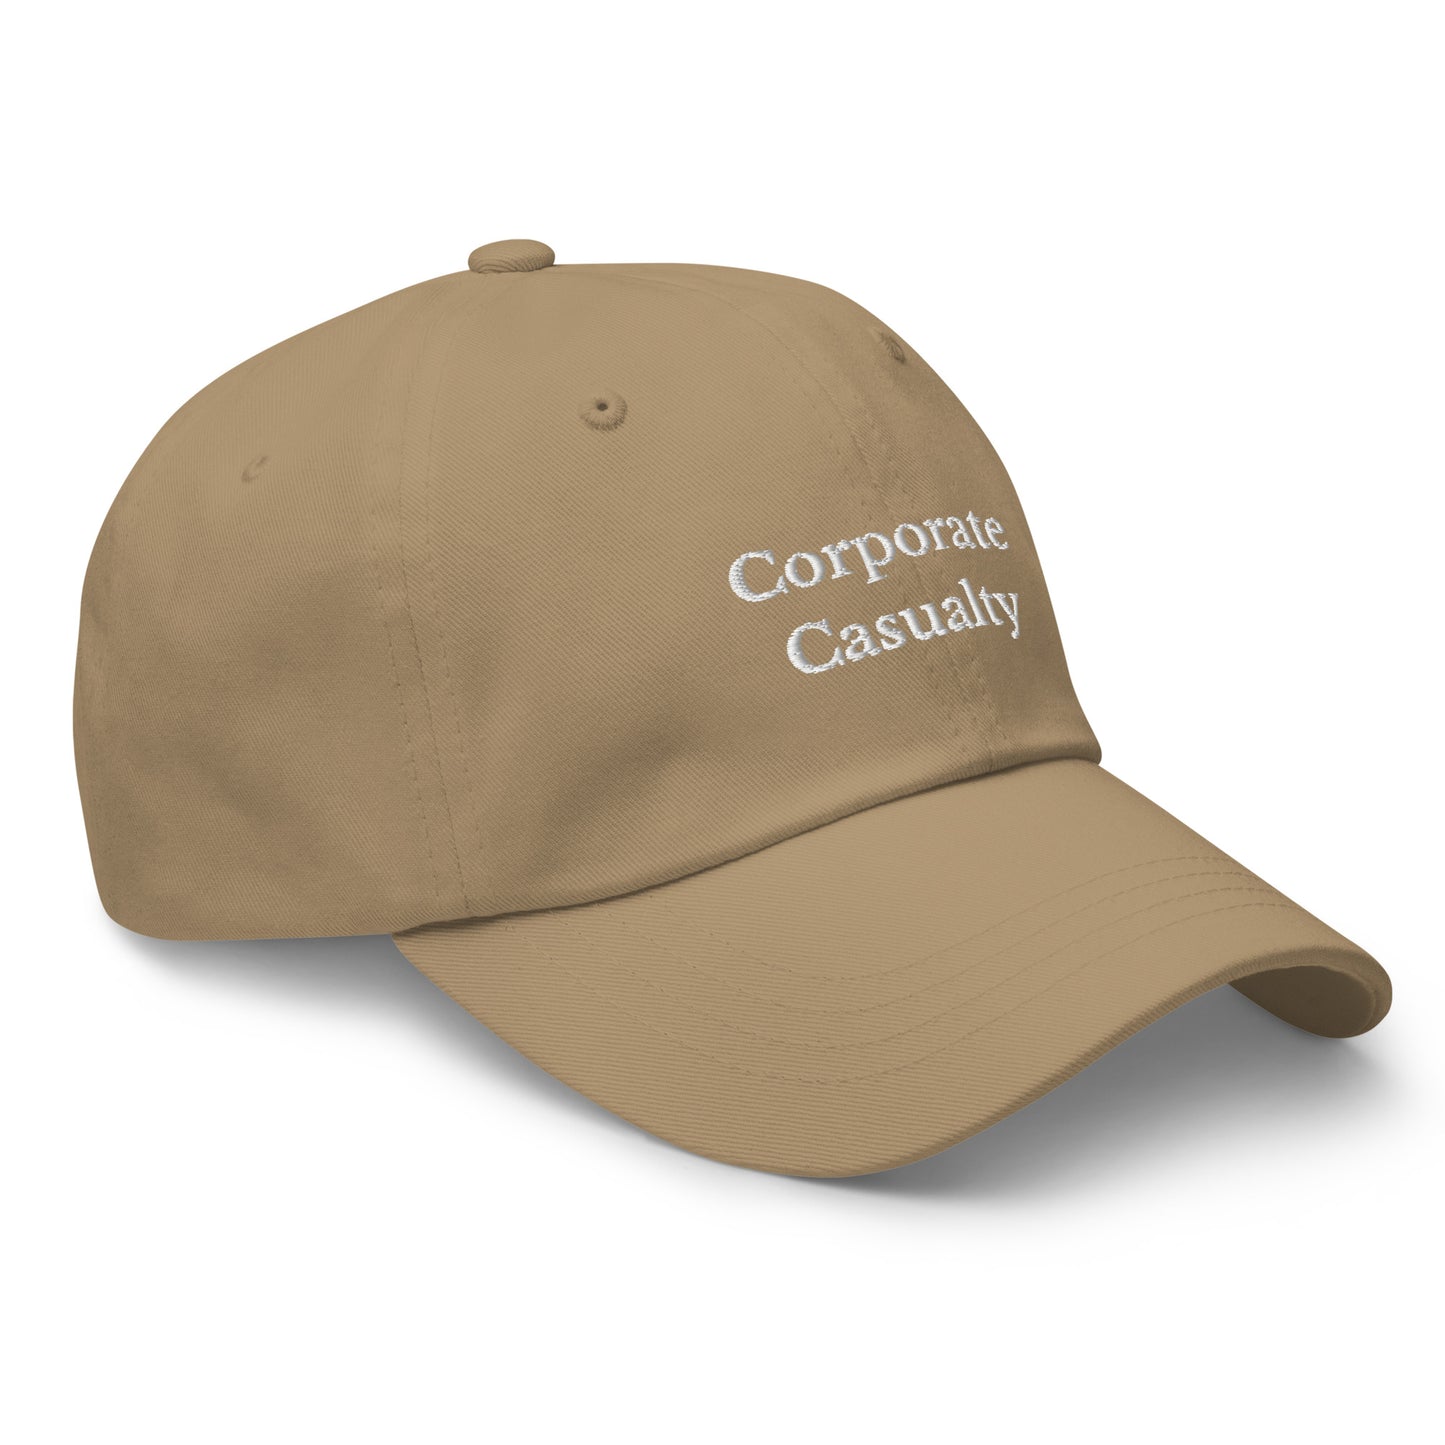 Corporate Casualty Cap